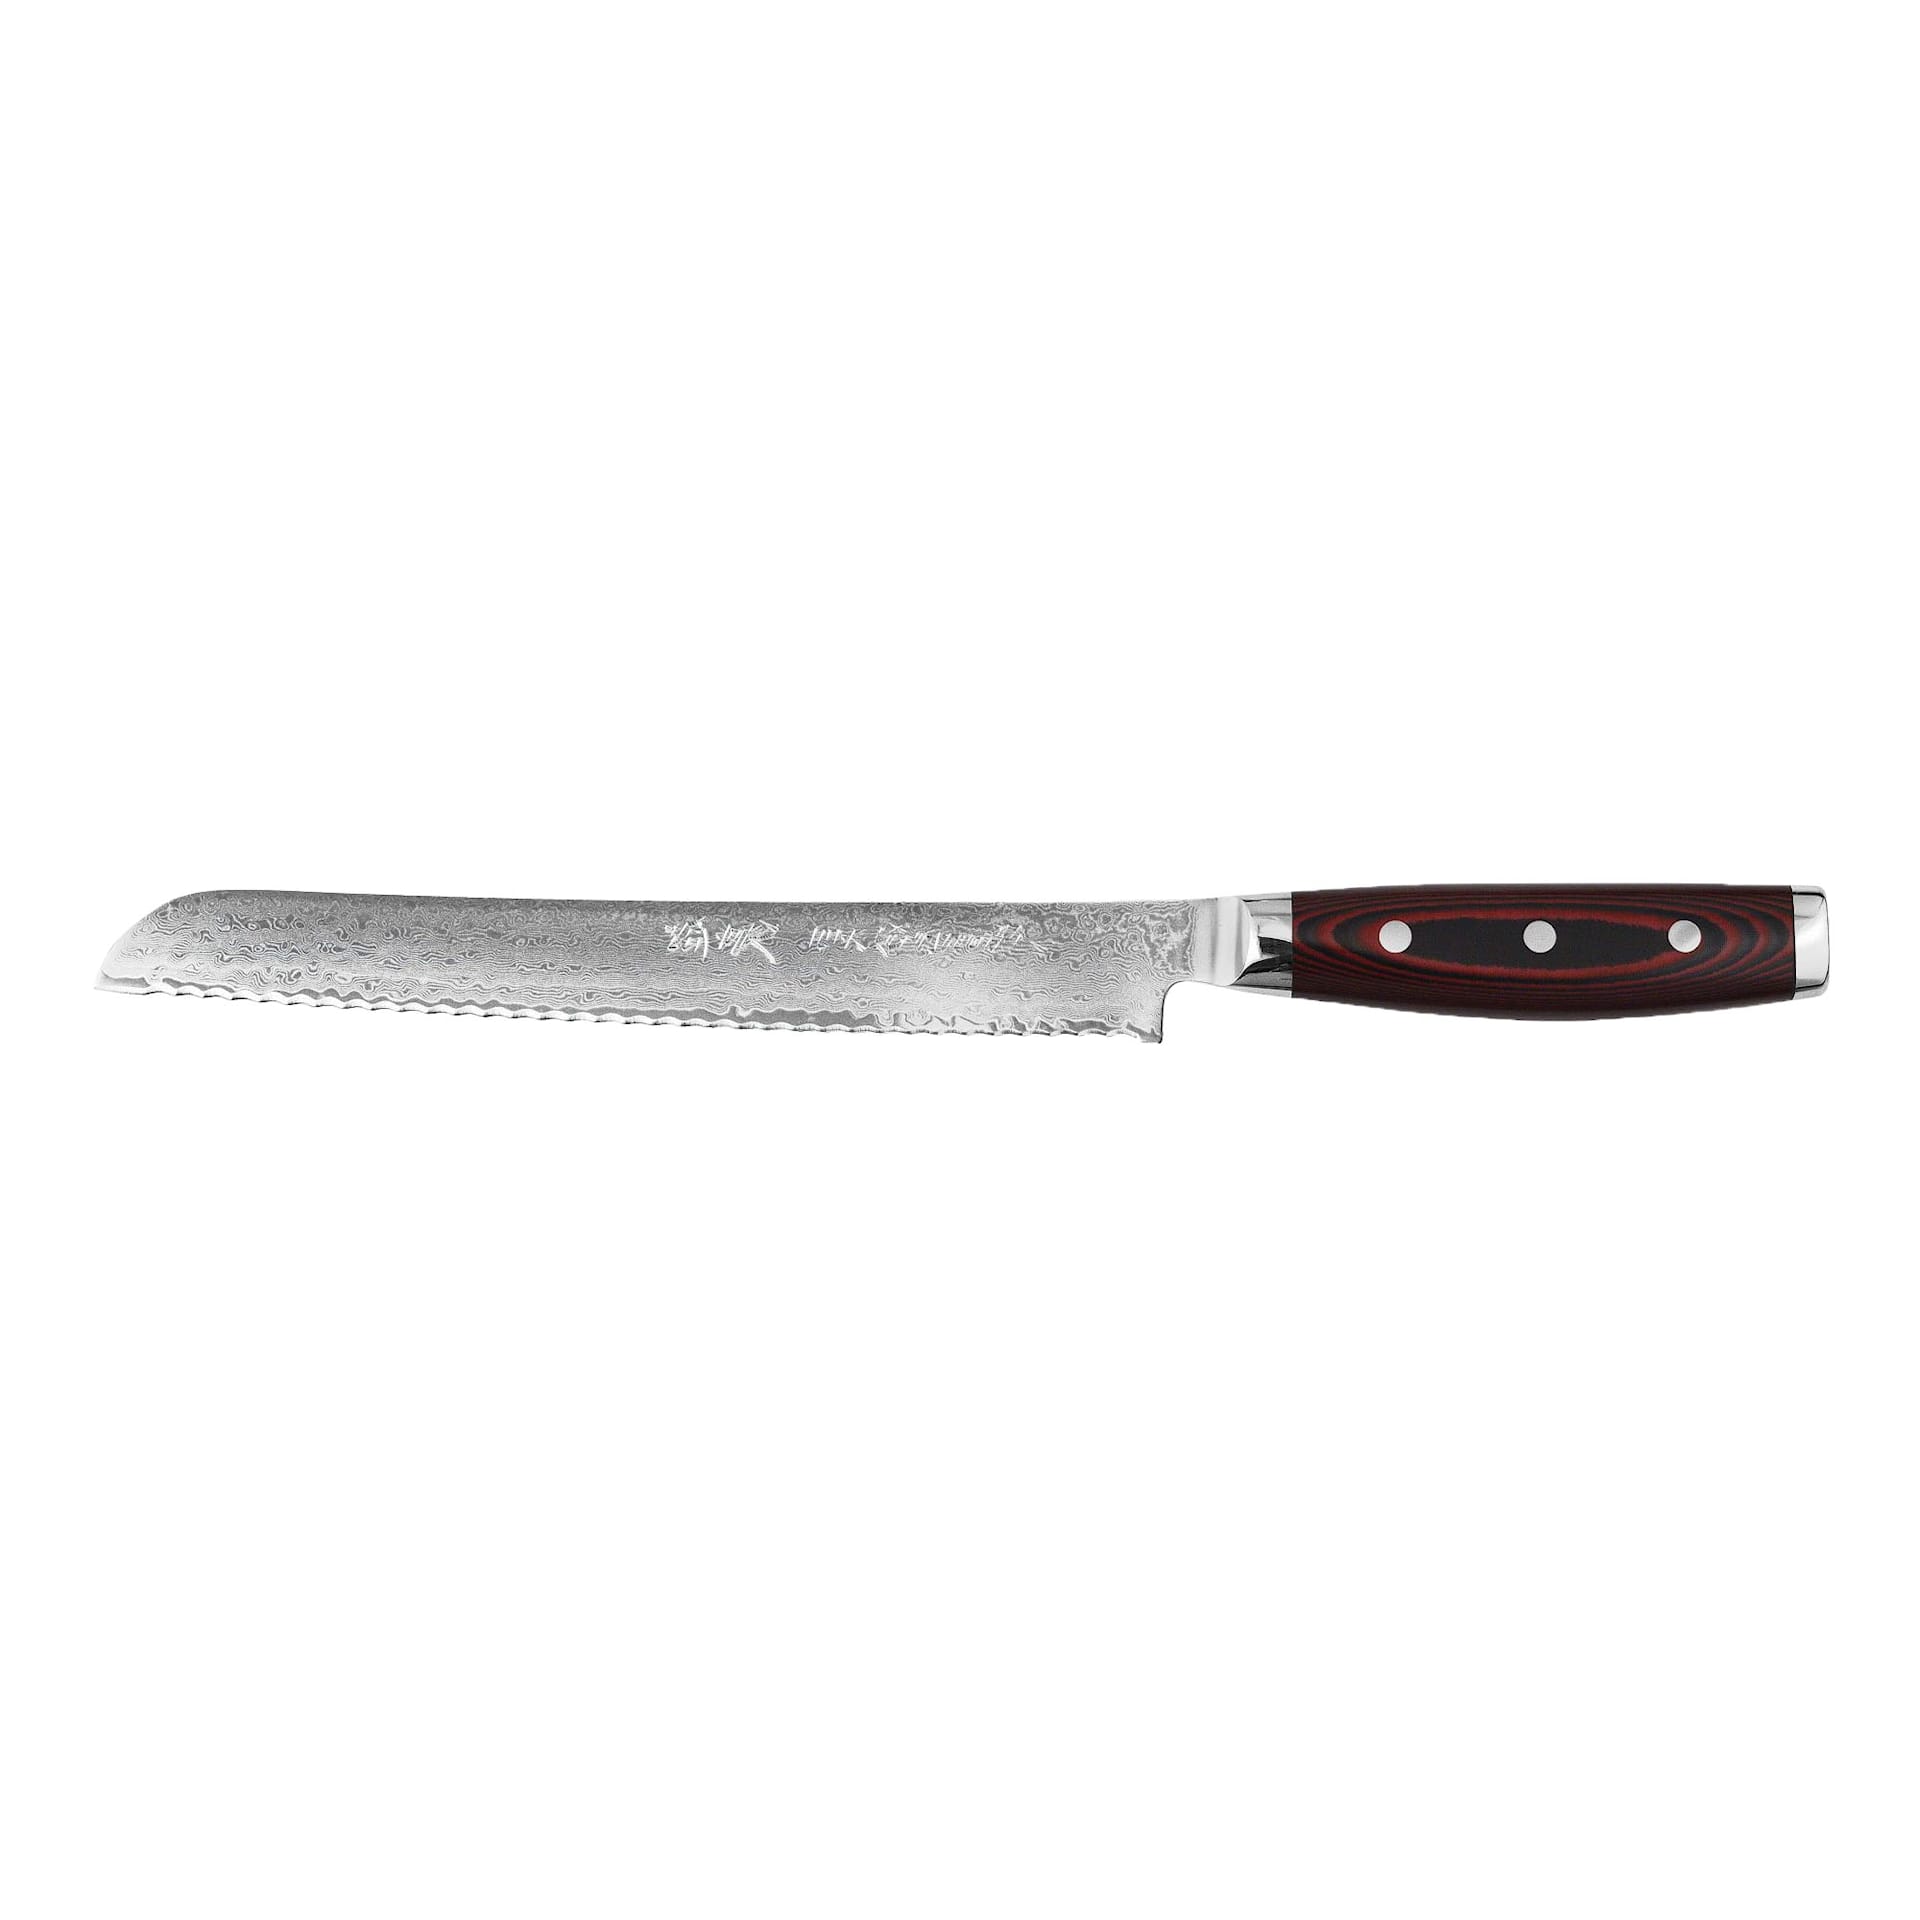 Yaxell Super Gou Bread knife 23 cm - Yaxell - NO GA